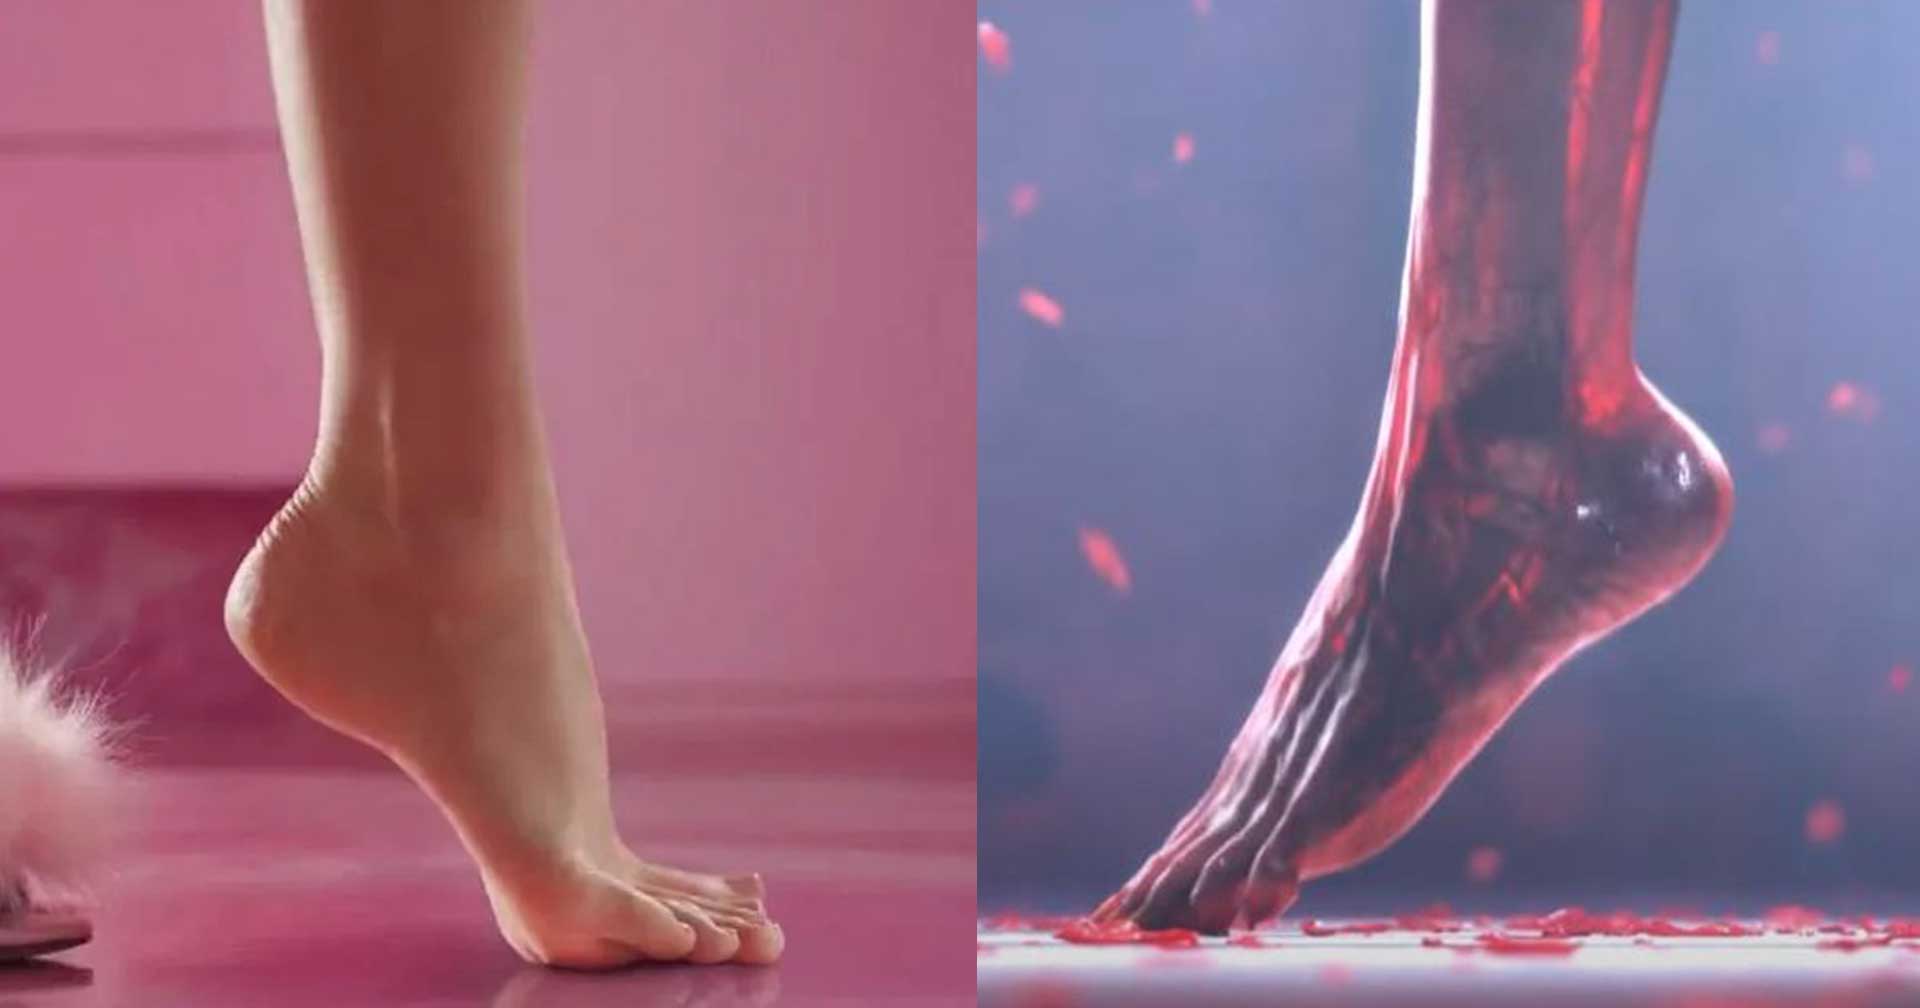 โปรดิวเซอร์ Diablo 4 เผย อยากเอาเกมมาคอลแลบกับ Barbie เพราะ ‘เท้าตัวละครงาม’